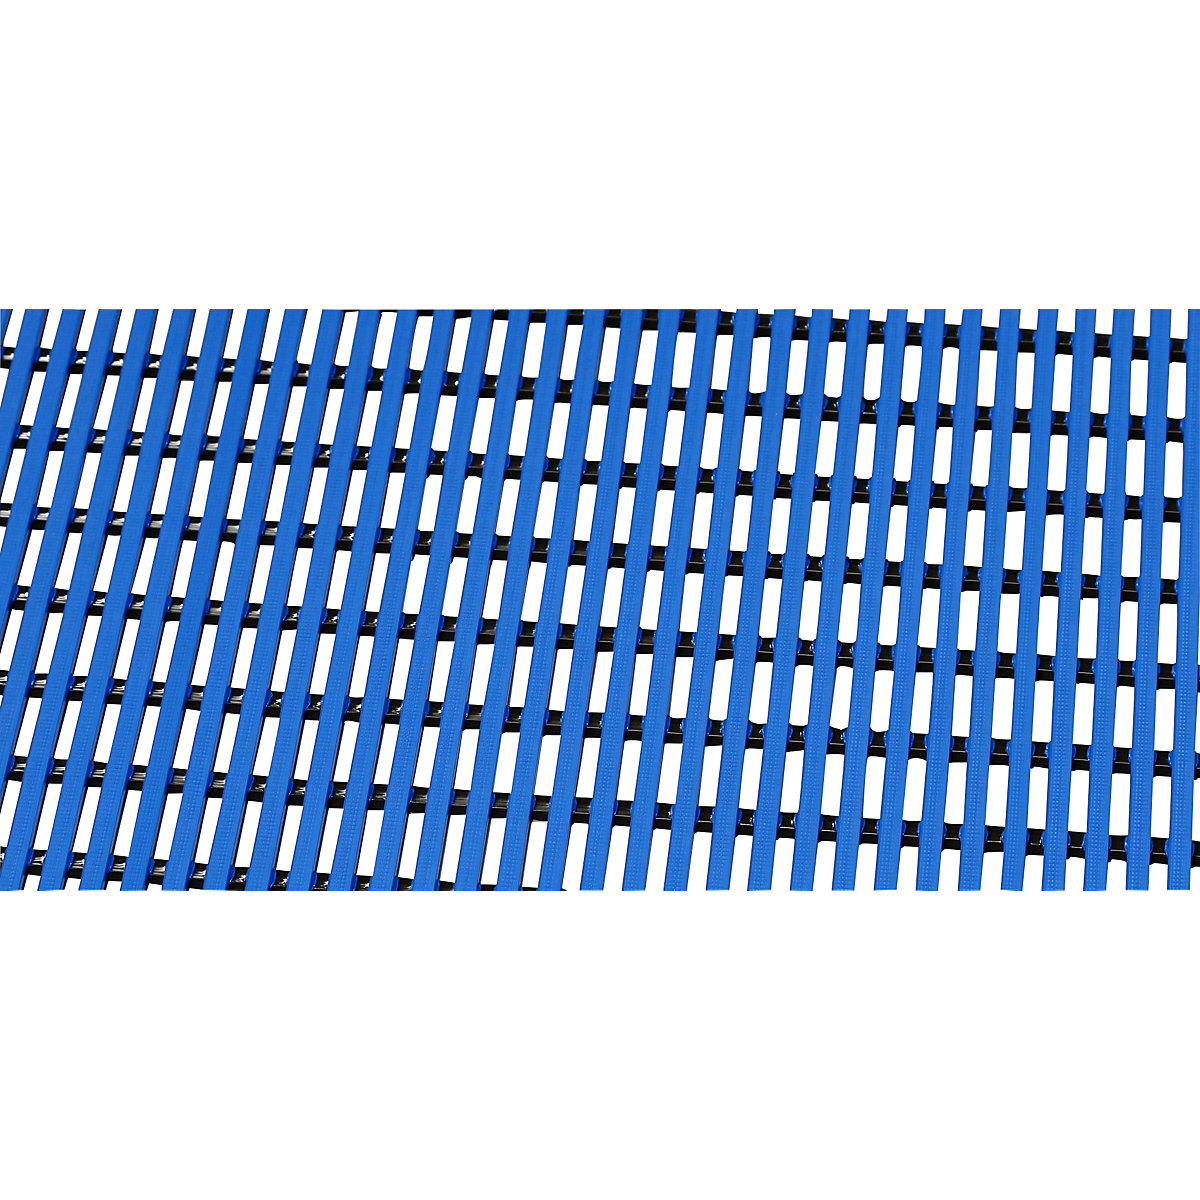 Bodenmatte für Dusch- und Umkleideraum, Weich-PVC, pro lfd. m, Breite 600 mm, blau